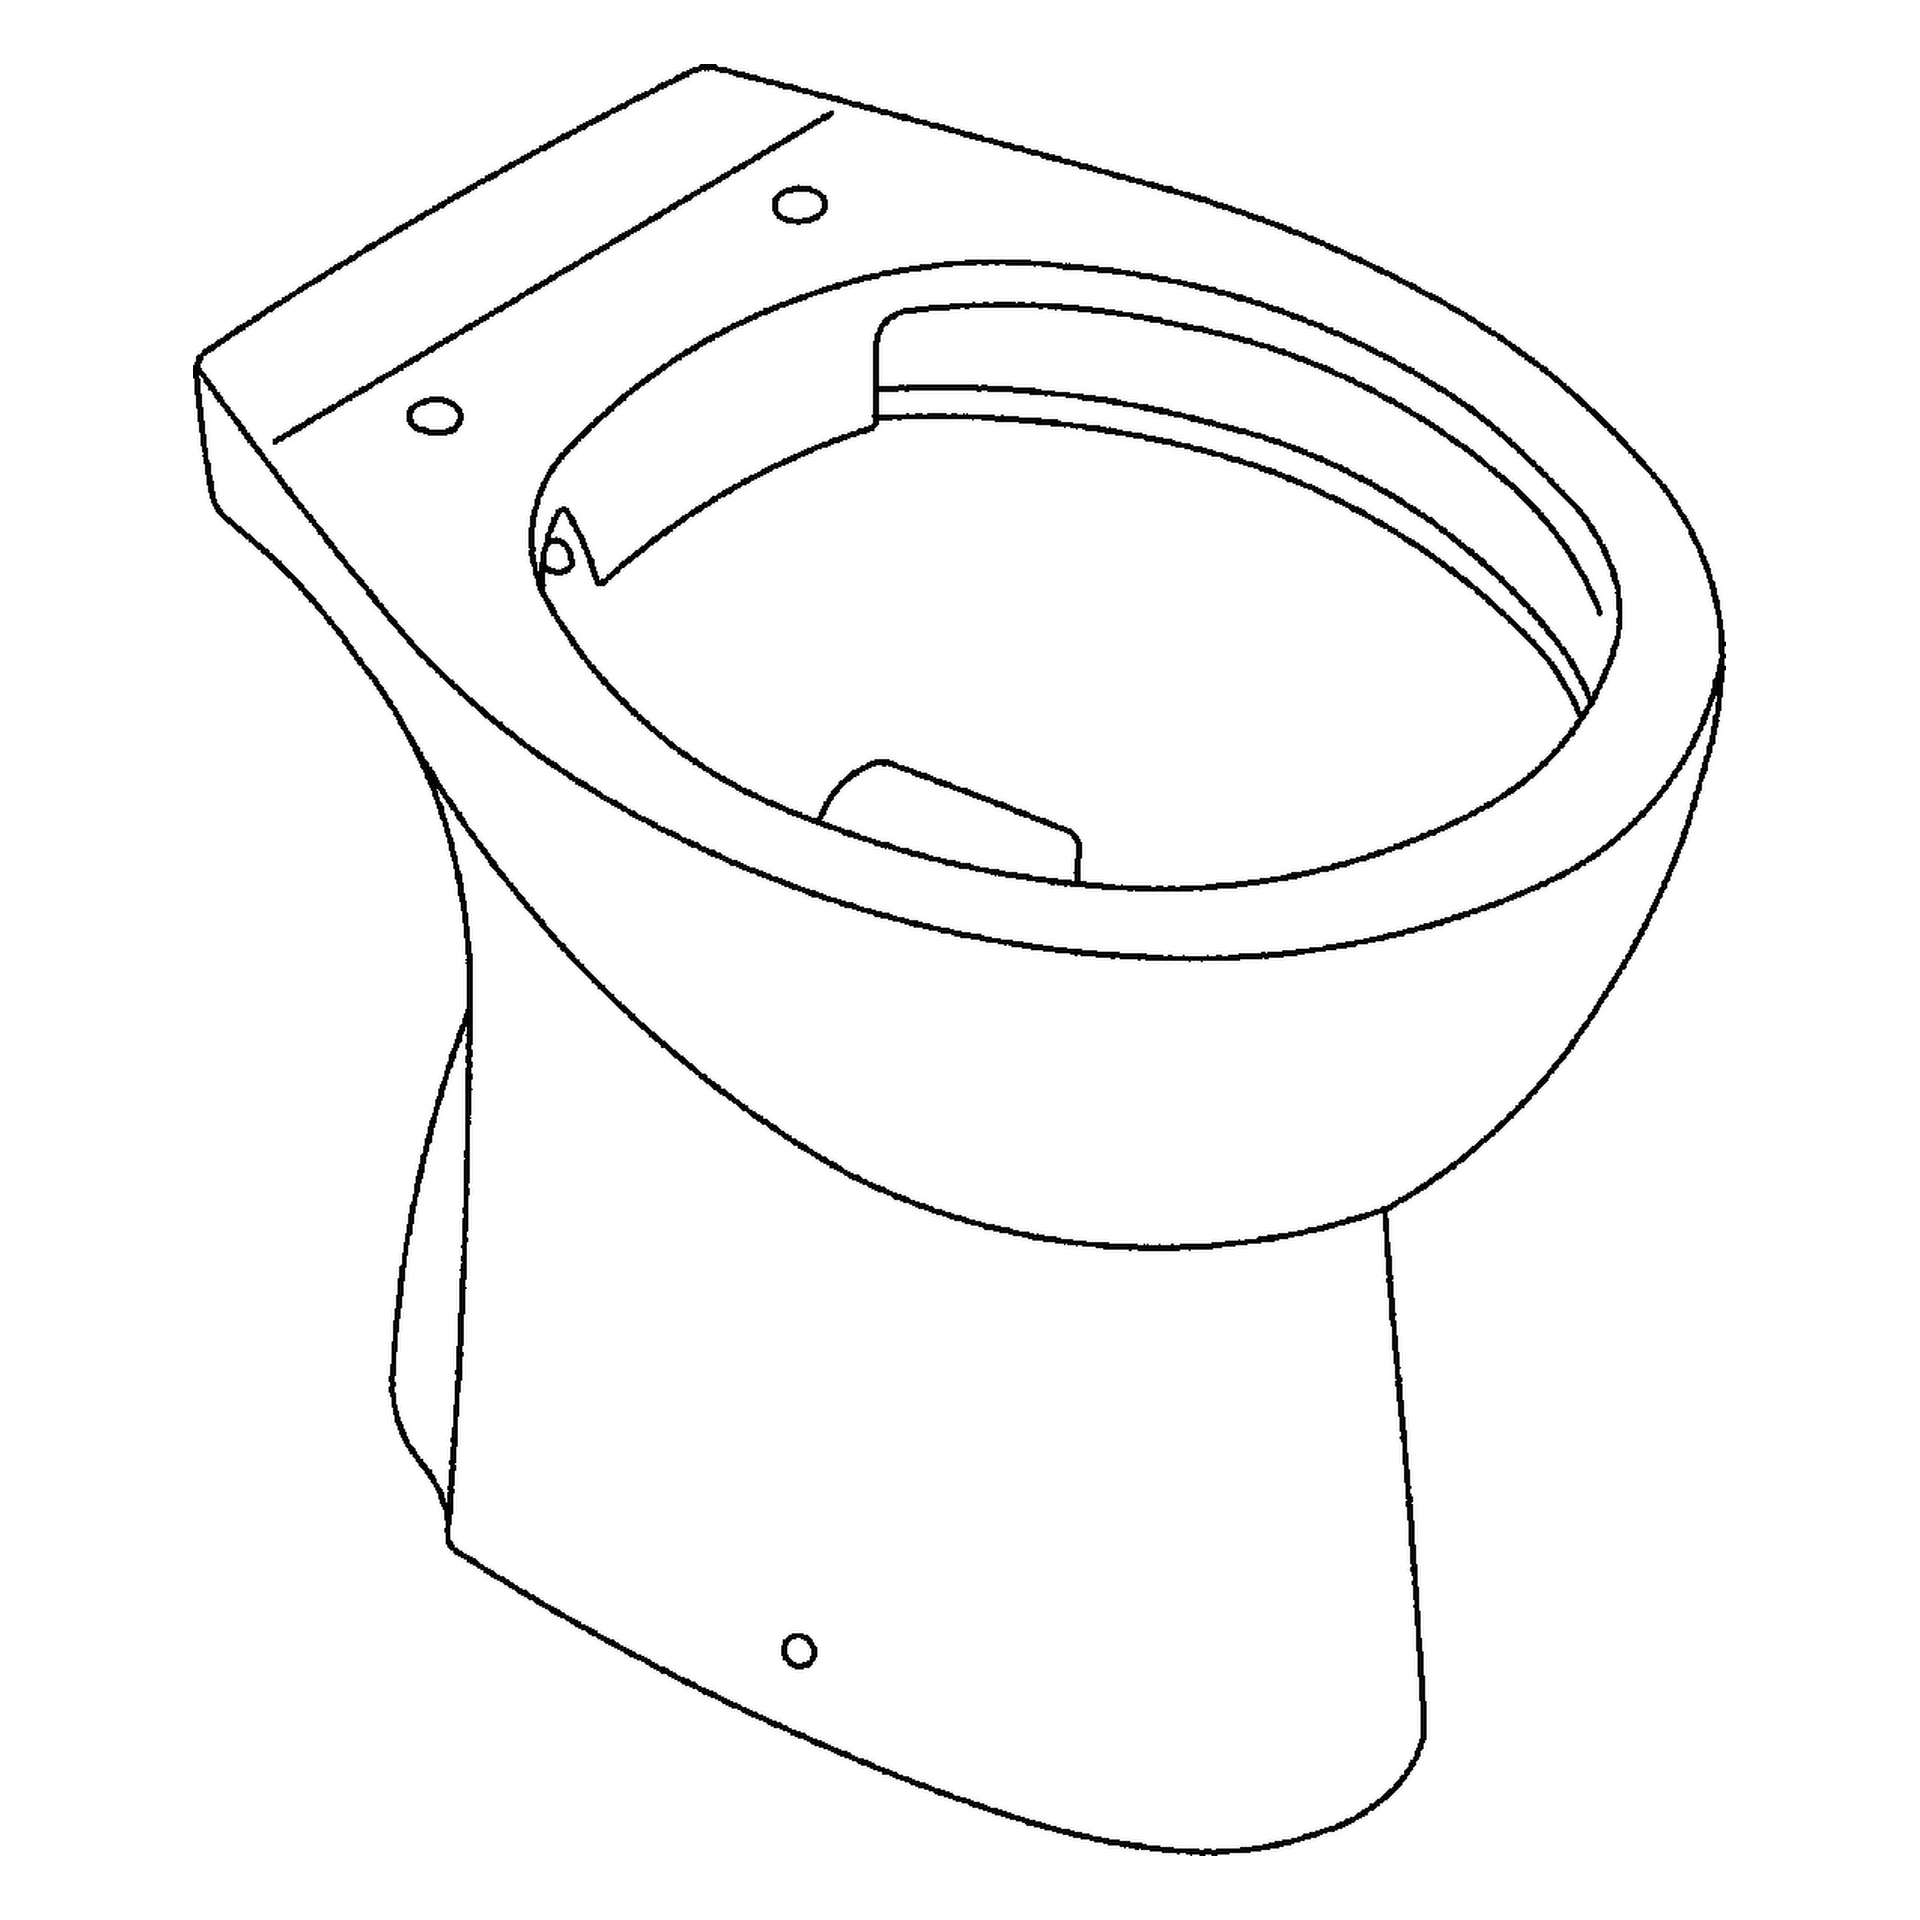 Stand-Tiefspül-WC Bau Keramik 39431, Abgang senkrecht, spülrandlos, aus Sanitärkeramik, alpinweiß